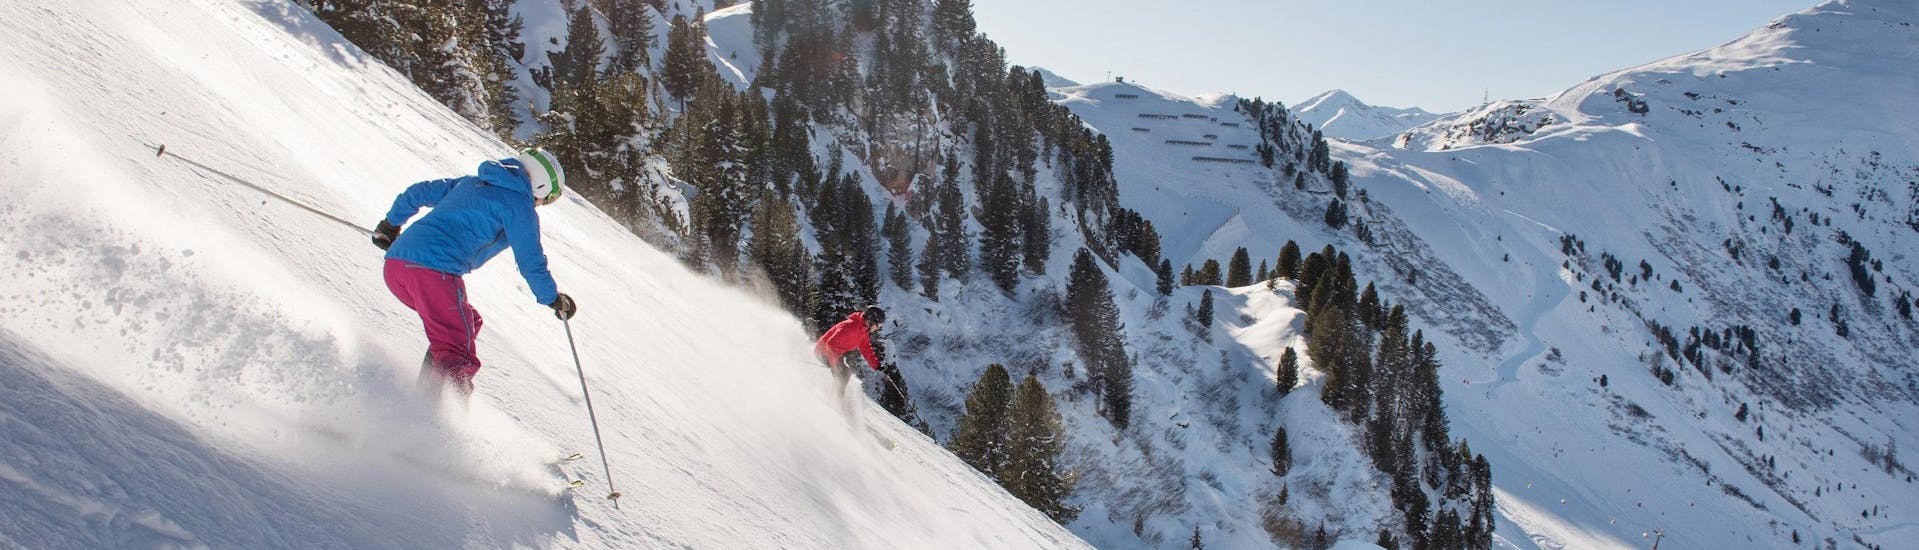 Ausblick auf die sonnige Berglandschaft beim Skifahren lernen mit den Skischulen in Mayrhofen.